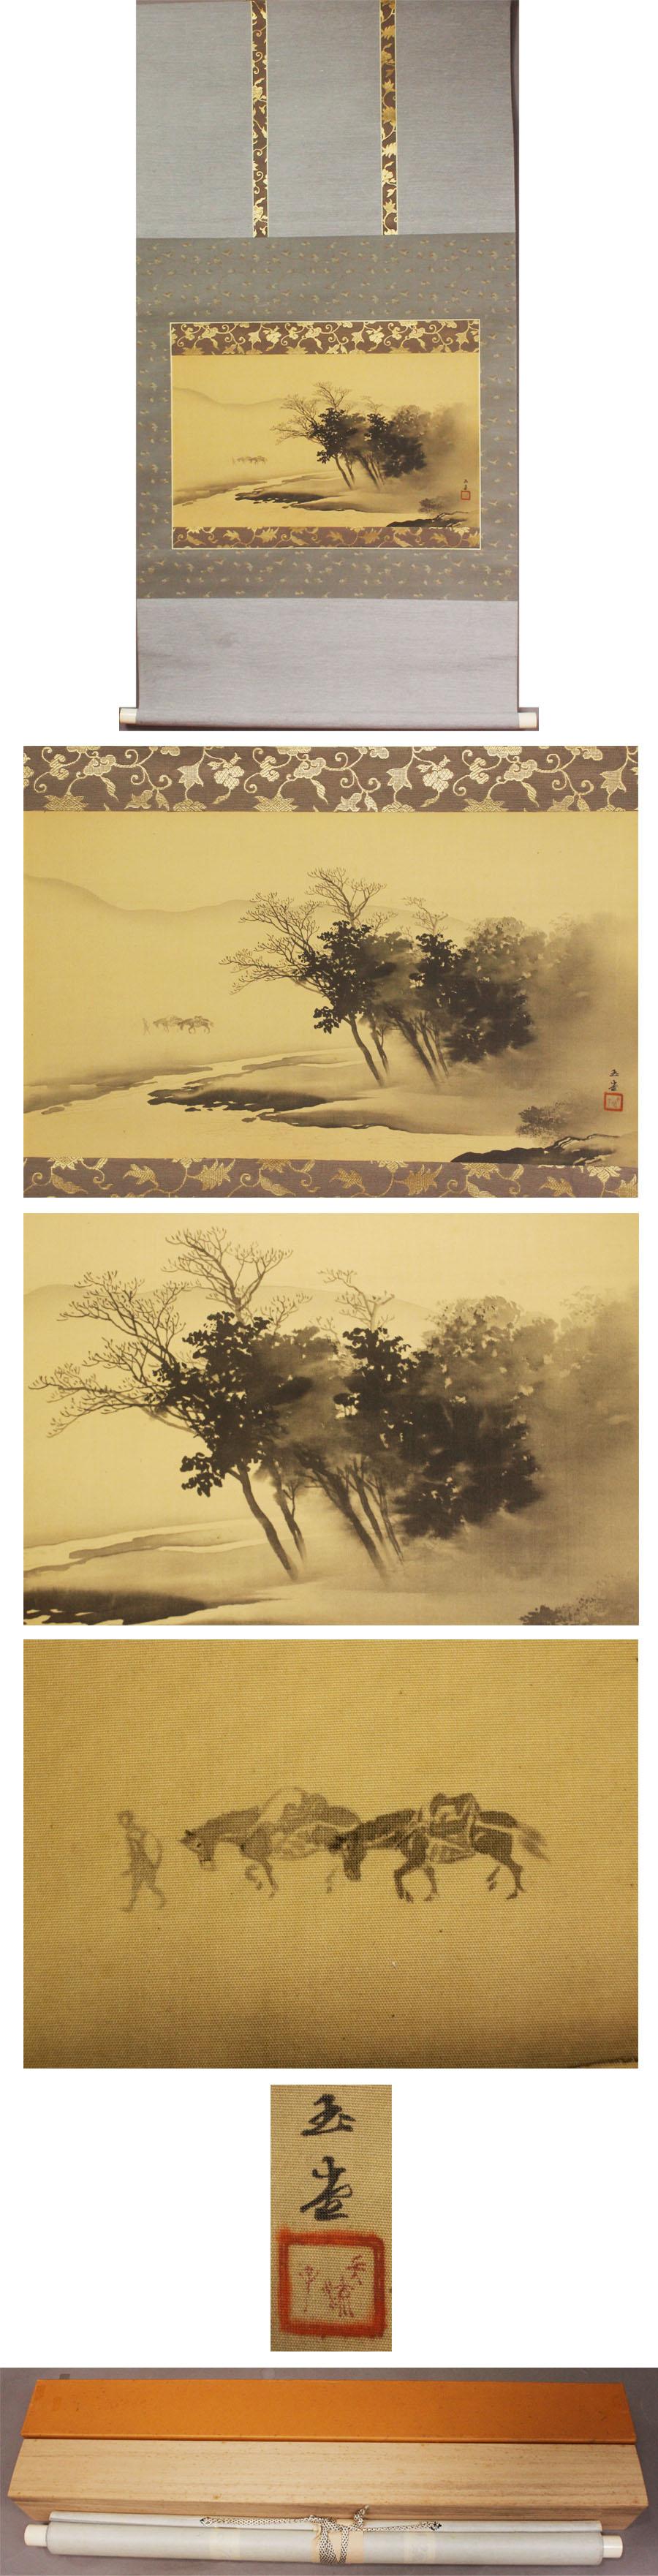 19th Century Nihonga Japanese Painting 1900 Meiji Scroll Kawai Gyokudo Nanga School Lake Scen For Sale